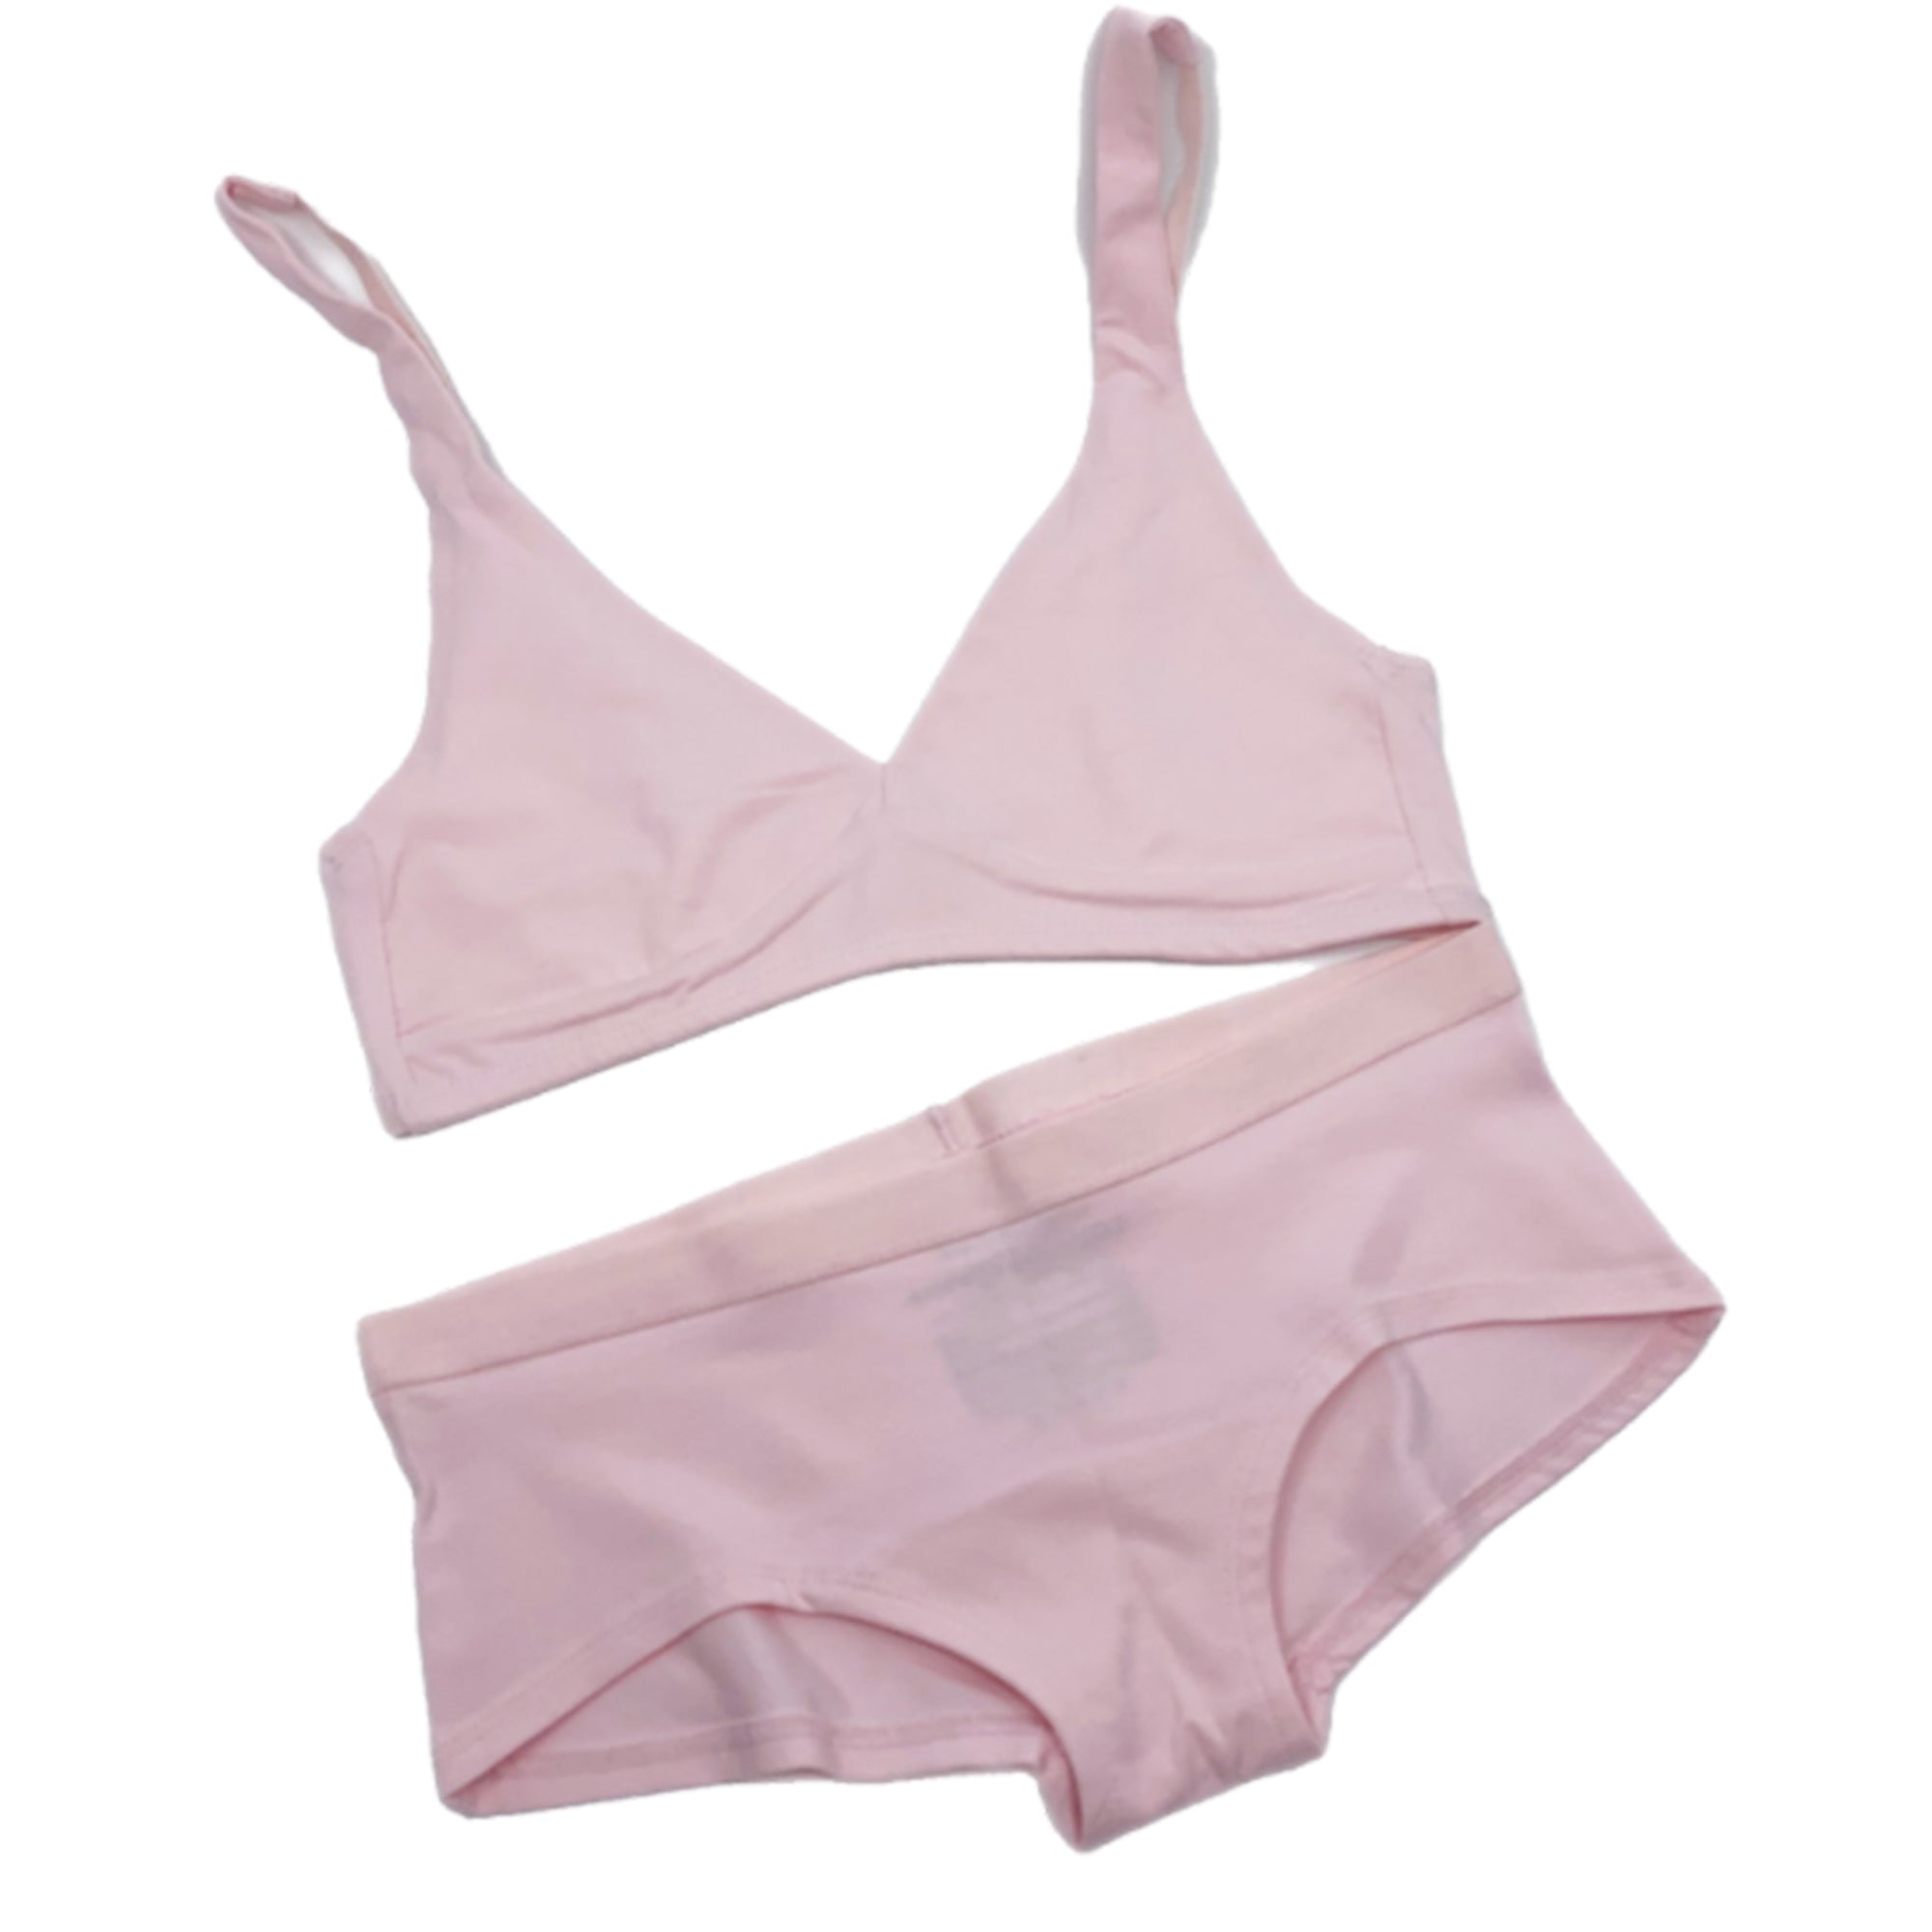 Girls Cotton Boy Shorts Underwear | Hot Pink